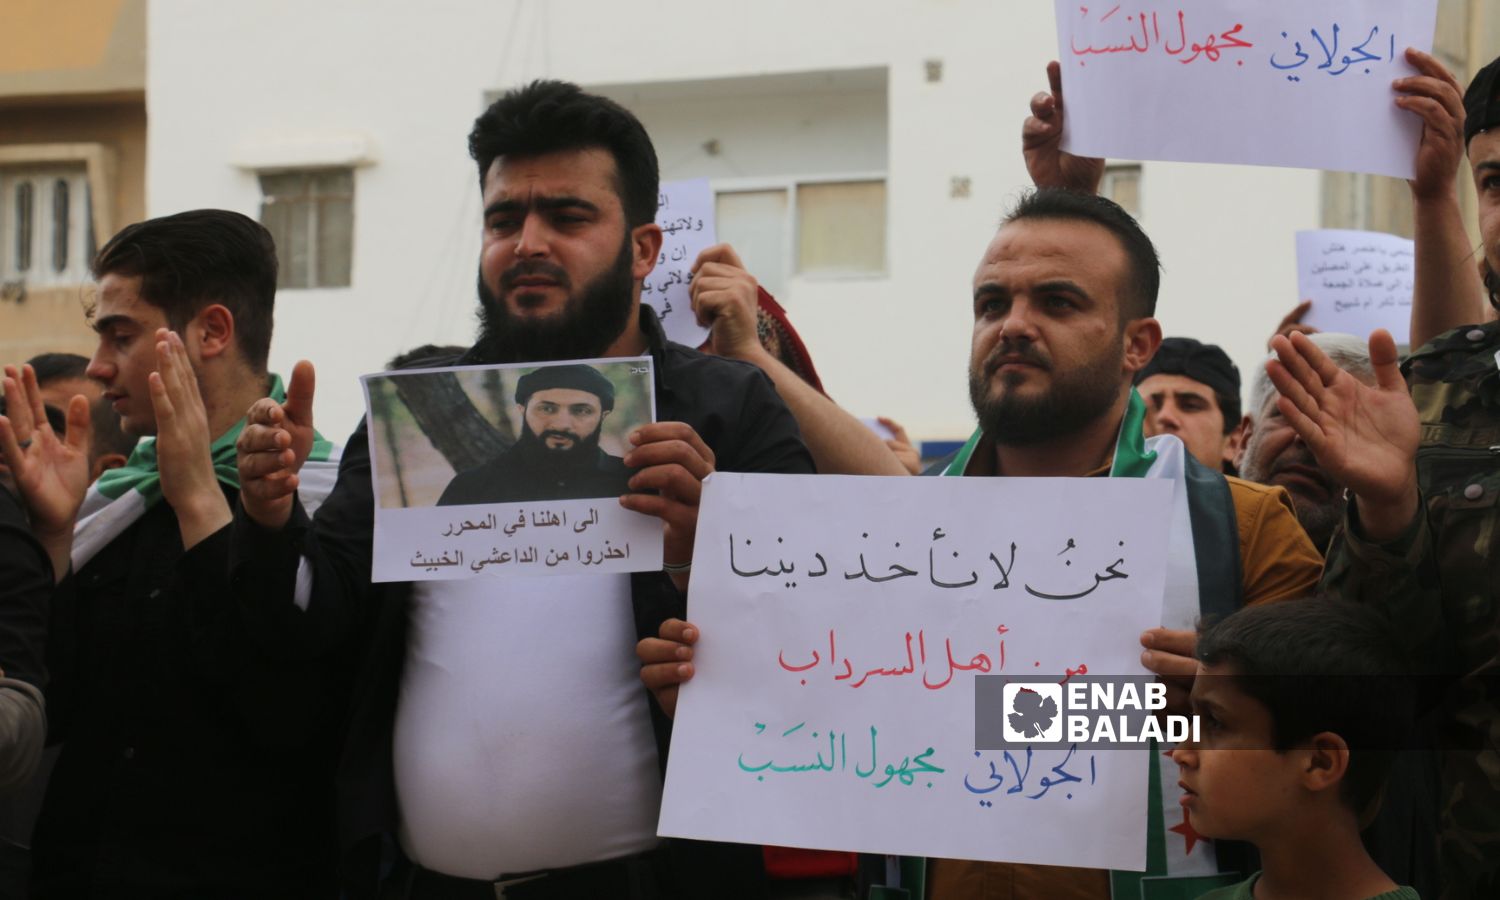 متظاهرون في مدينة اعزاز بريف حلب الشمالي رفضًا لسياسة "هيئة تحرير الشام" وعمليات الاعتقال التي تنفذها في إدلب- 12 من أيار 2023 (عنب بلدي/ ديان جنباز)